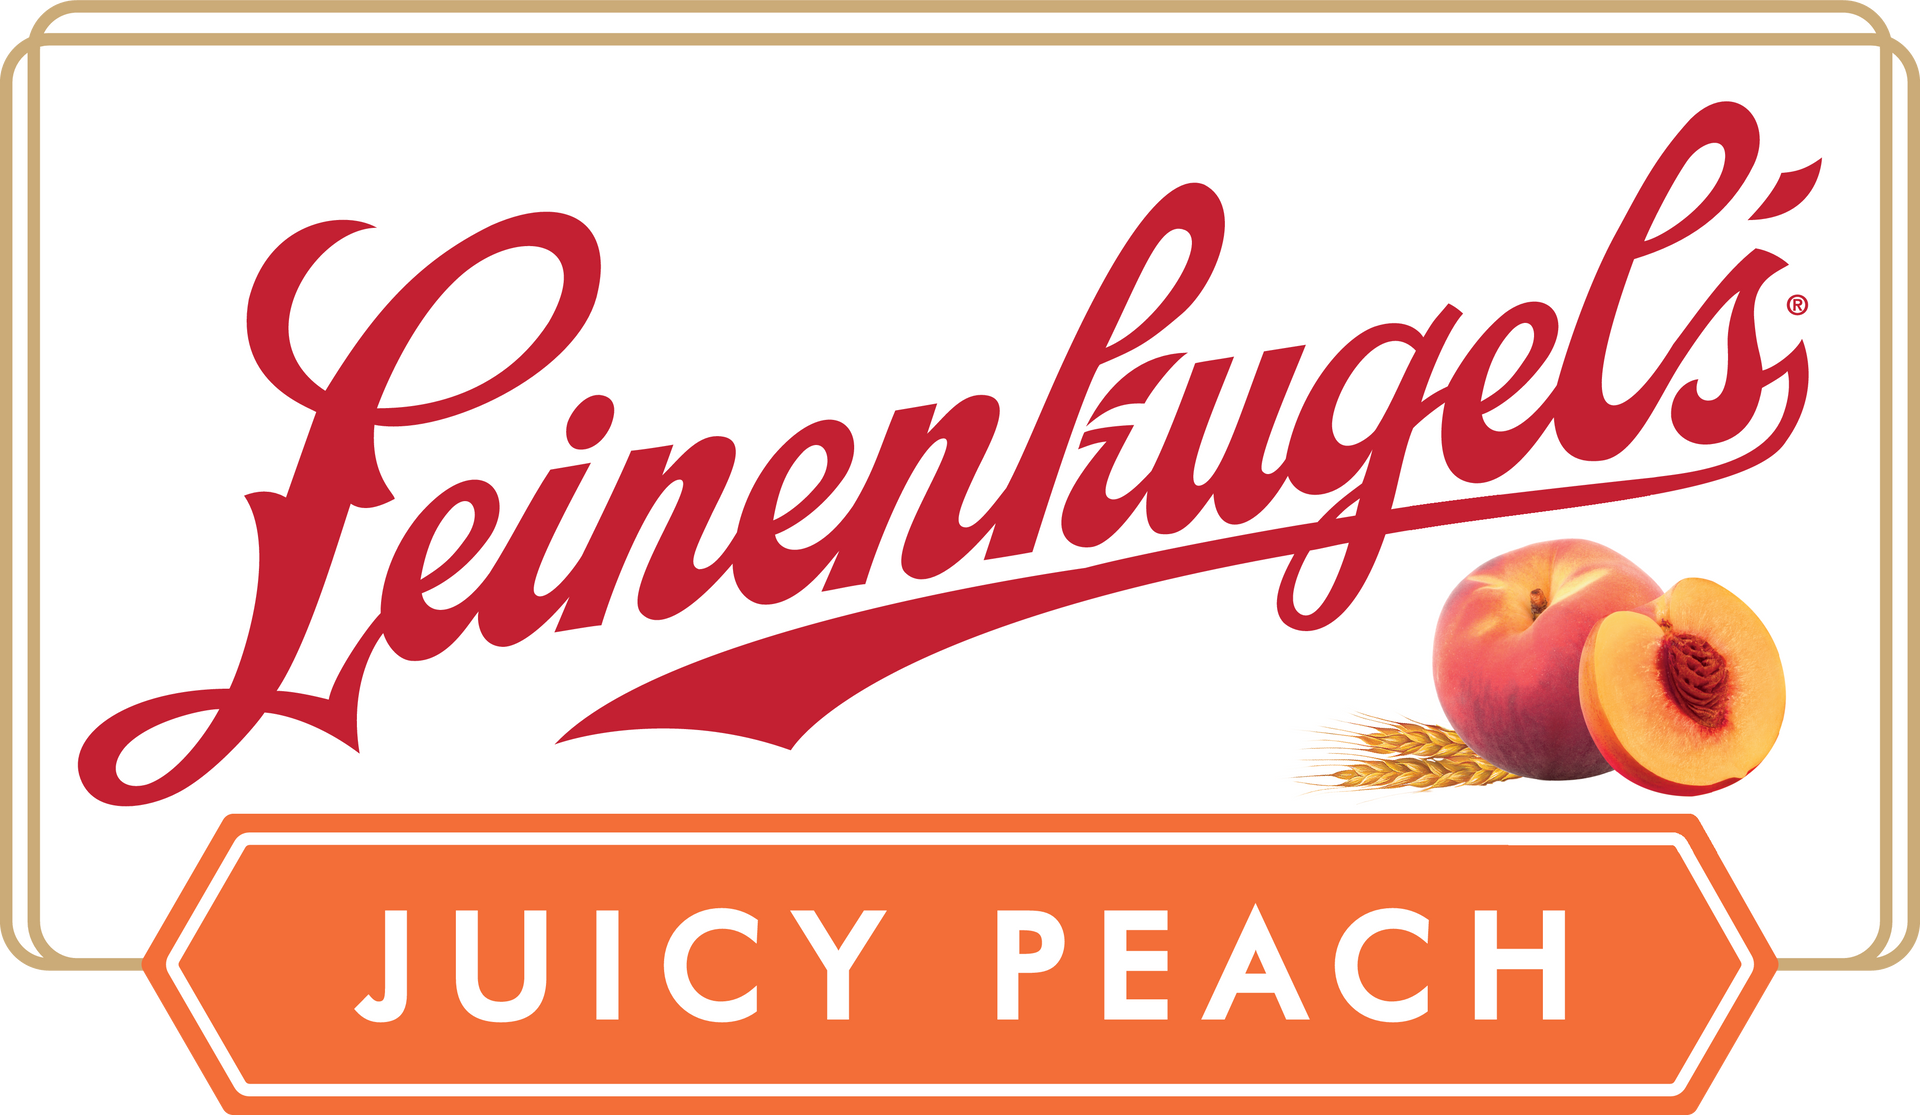 Leinekugle Juicy Peach